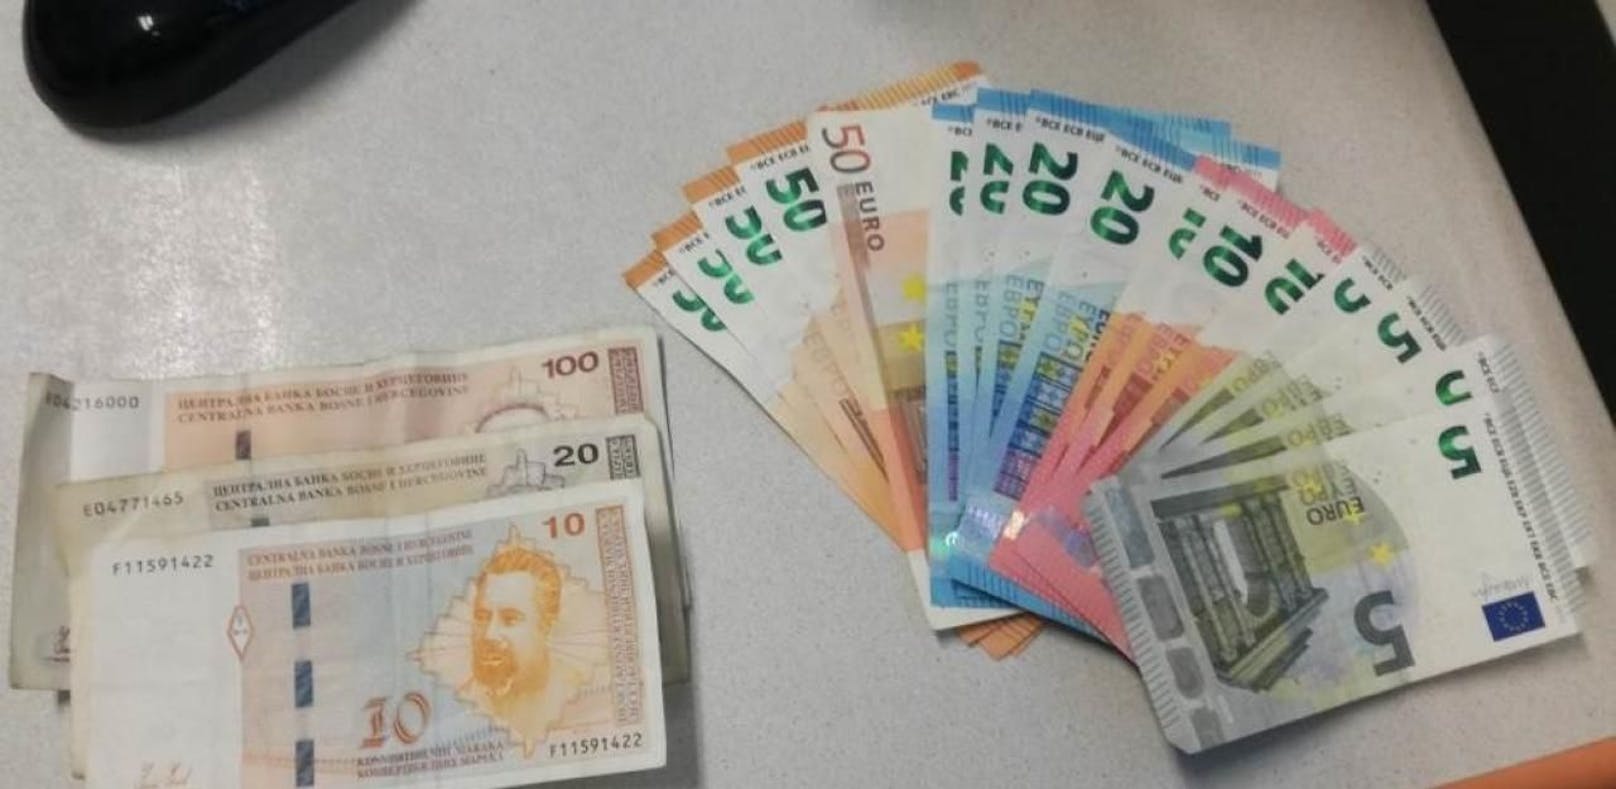 Die Polizei fand bei dem mutmaßlichen Autoeinbrecher mehrere hundert Euro Bargeld.